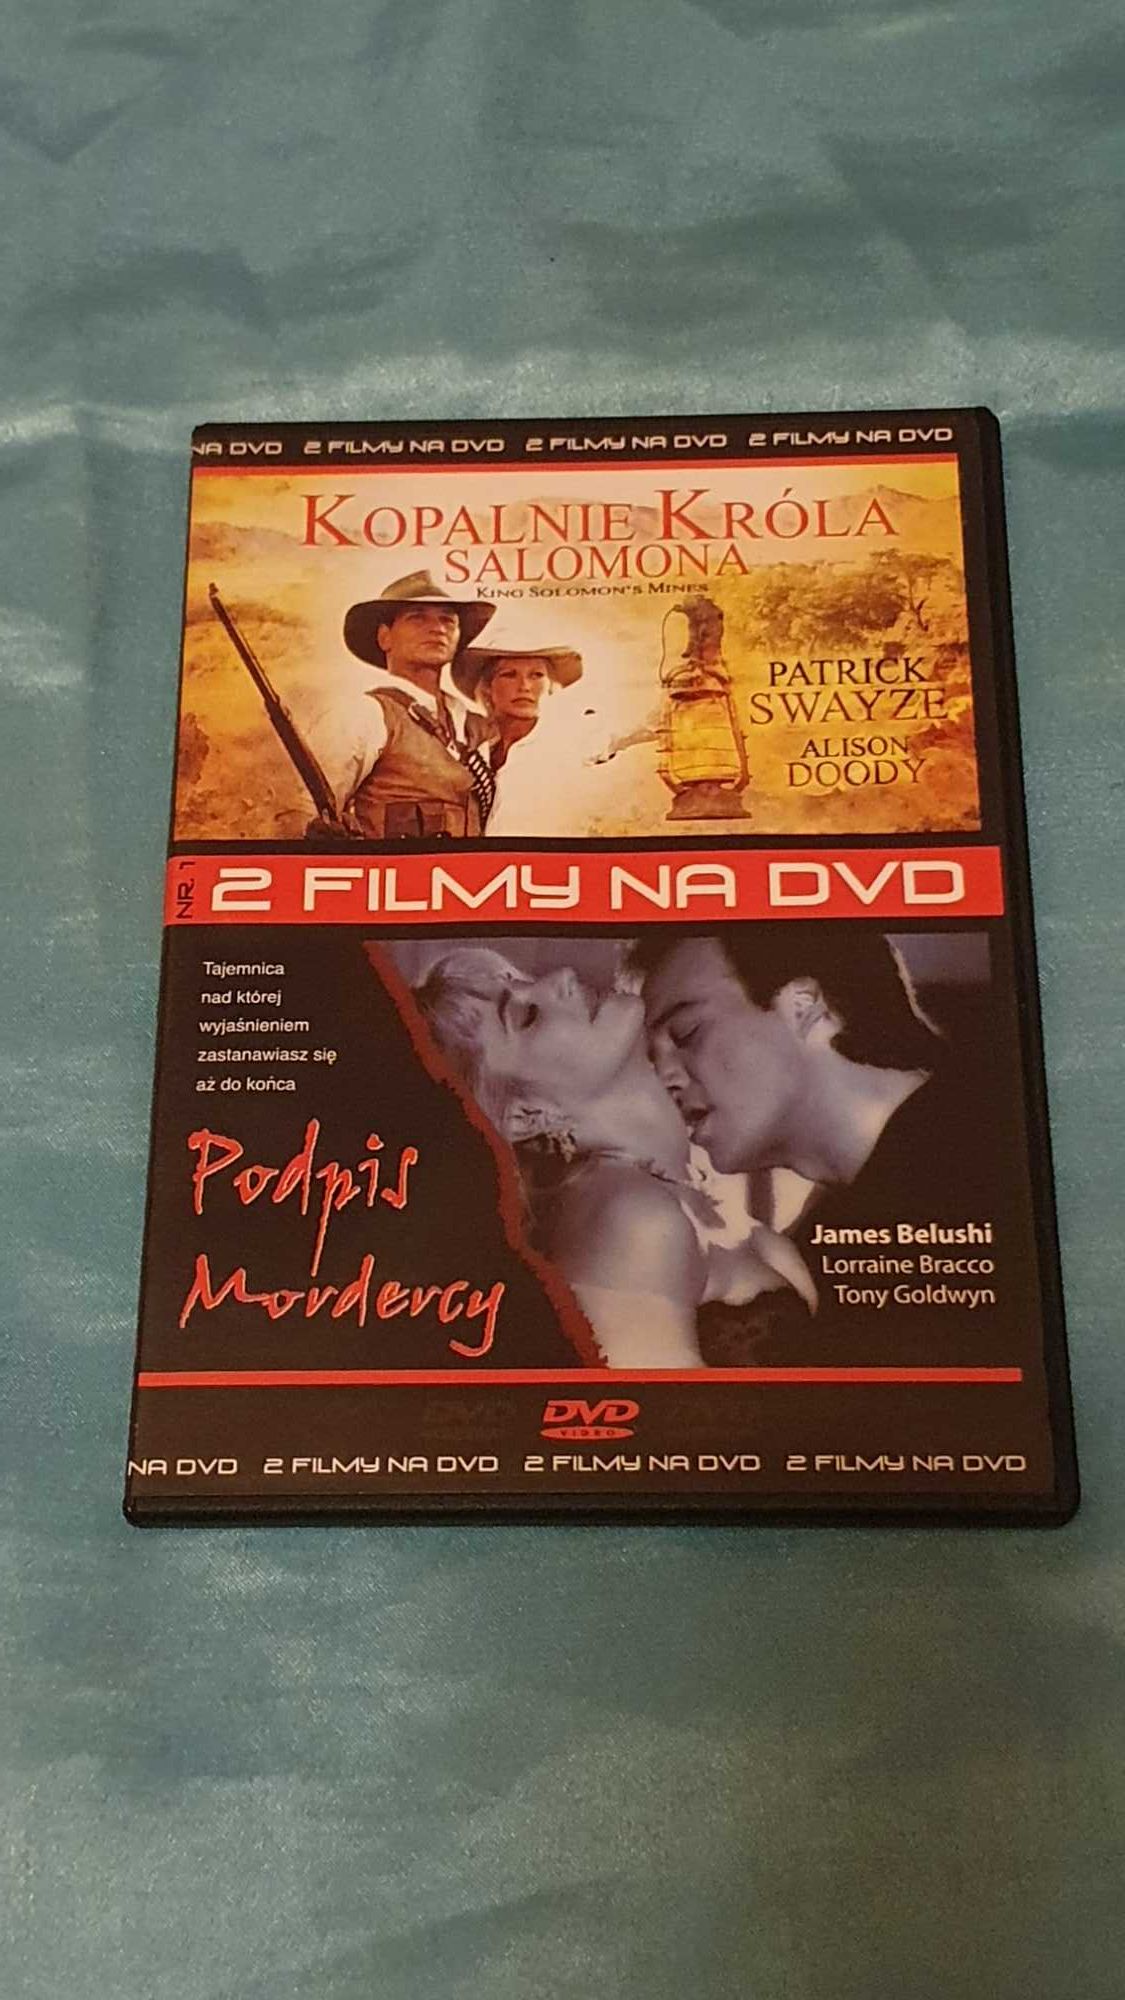 2 Filmy  Kopalnie Króla Salomona + Podpis Mordercy  DVD